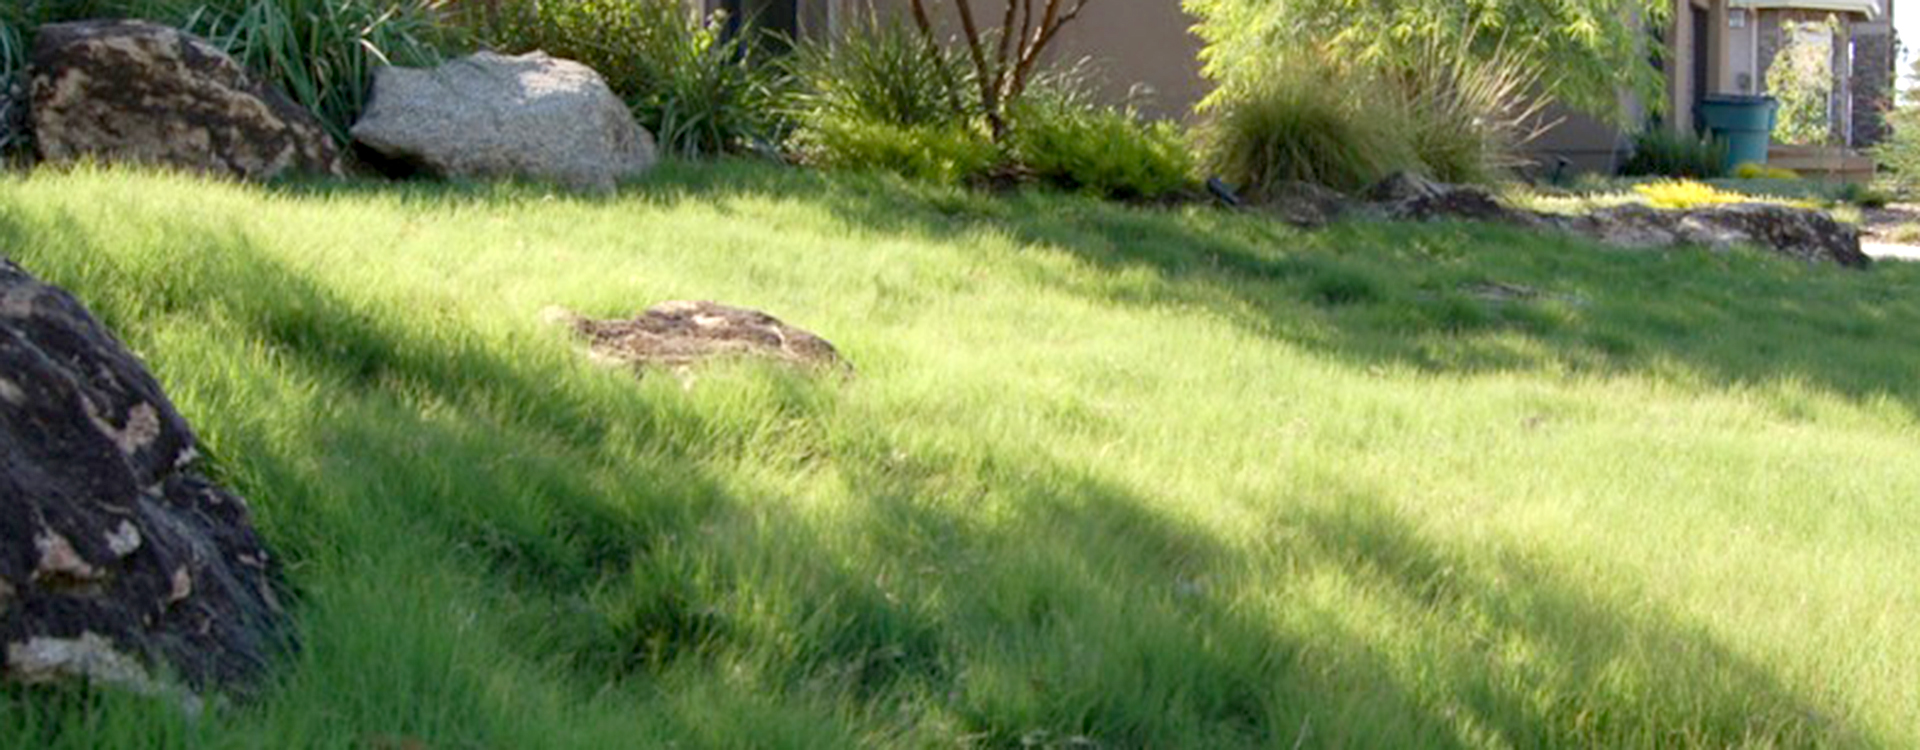 Buffalograss in yard